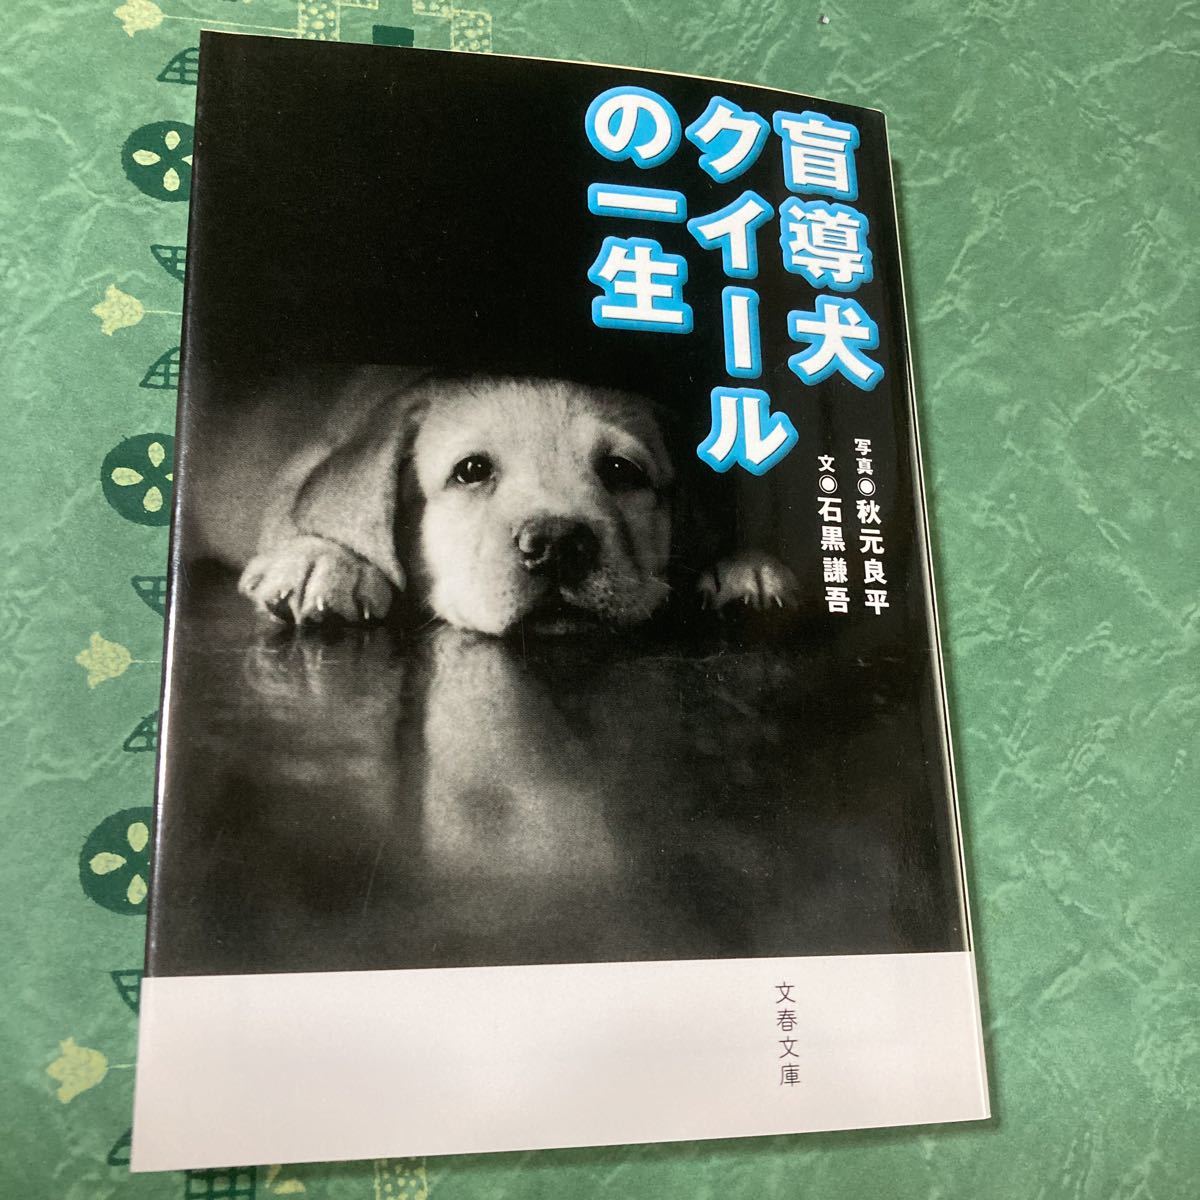 【 подержанный товар 】... собака ...   1...  фотография  *   осень  ... ... *   камень  черный ... ... весна  ...  рекомендуемая розничная цена （ сам товар  650  йен + налог  ）